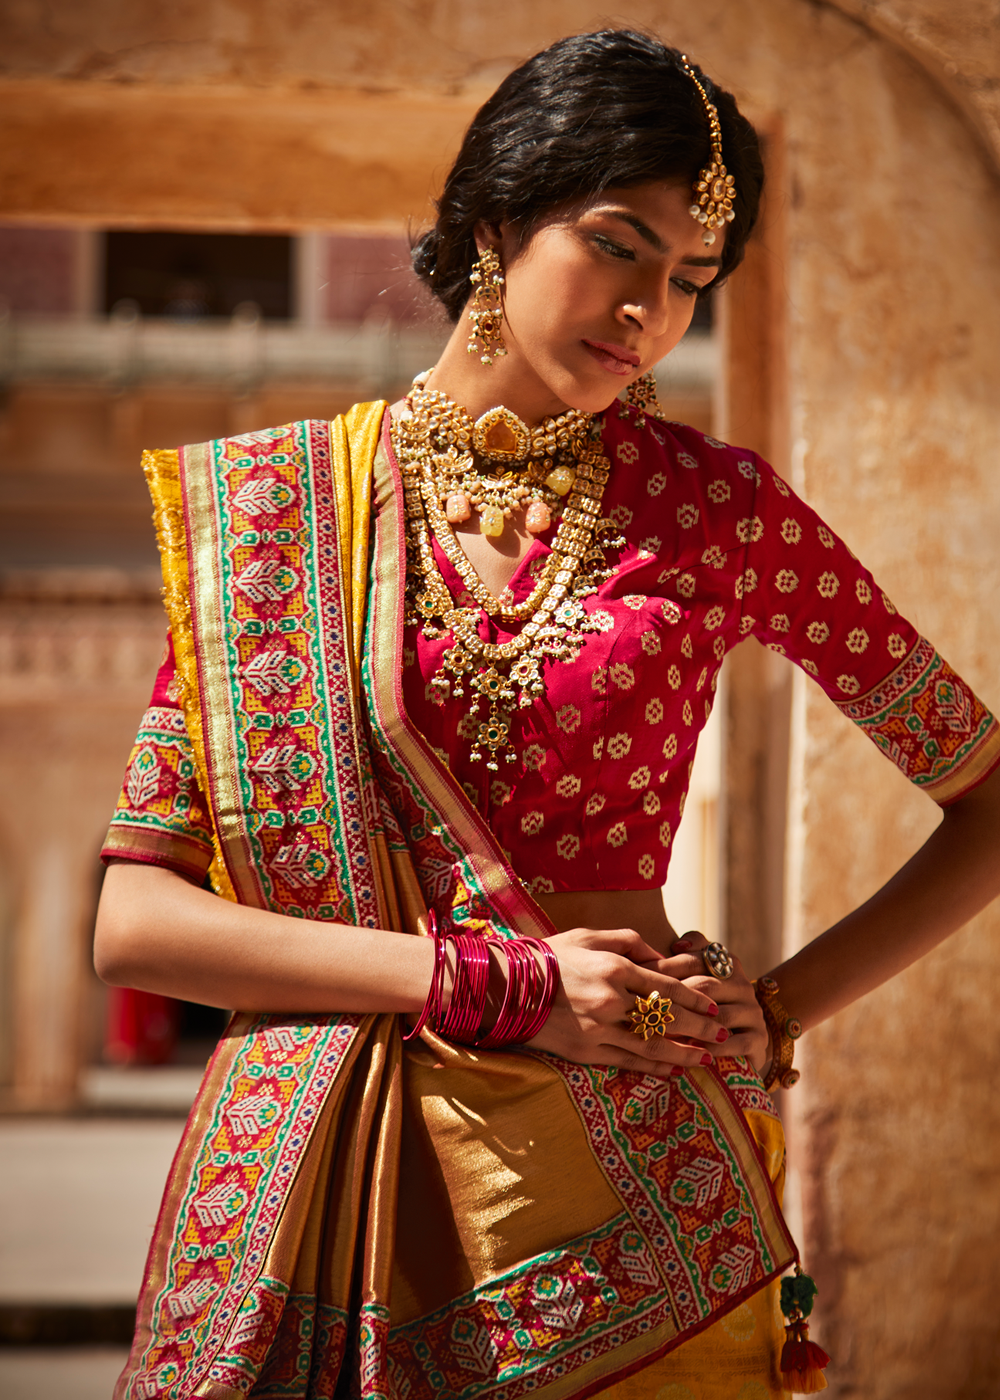 Buy MySilkLove Golden Yellow and Red Zari Woven Designer Banarasi Saree Online